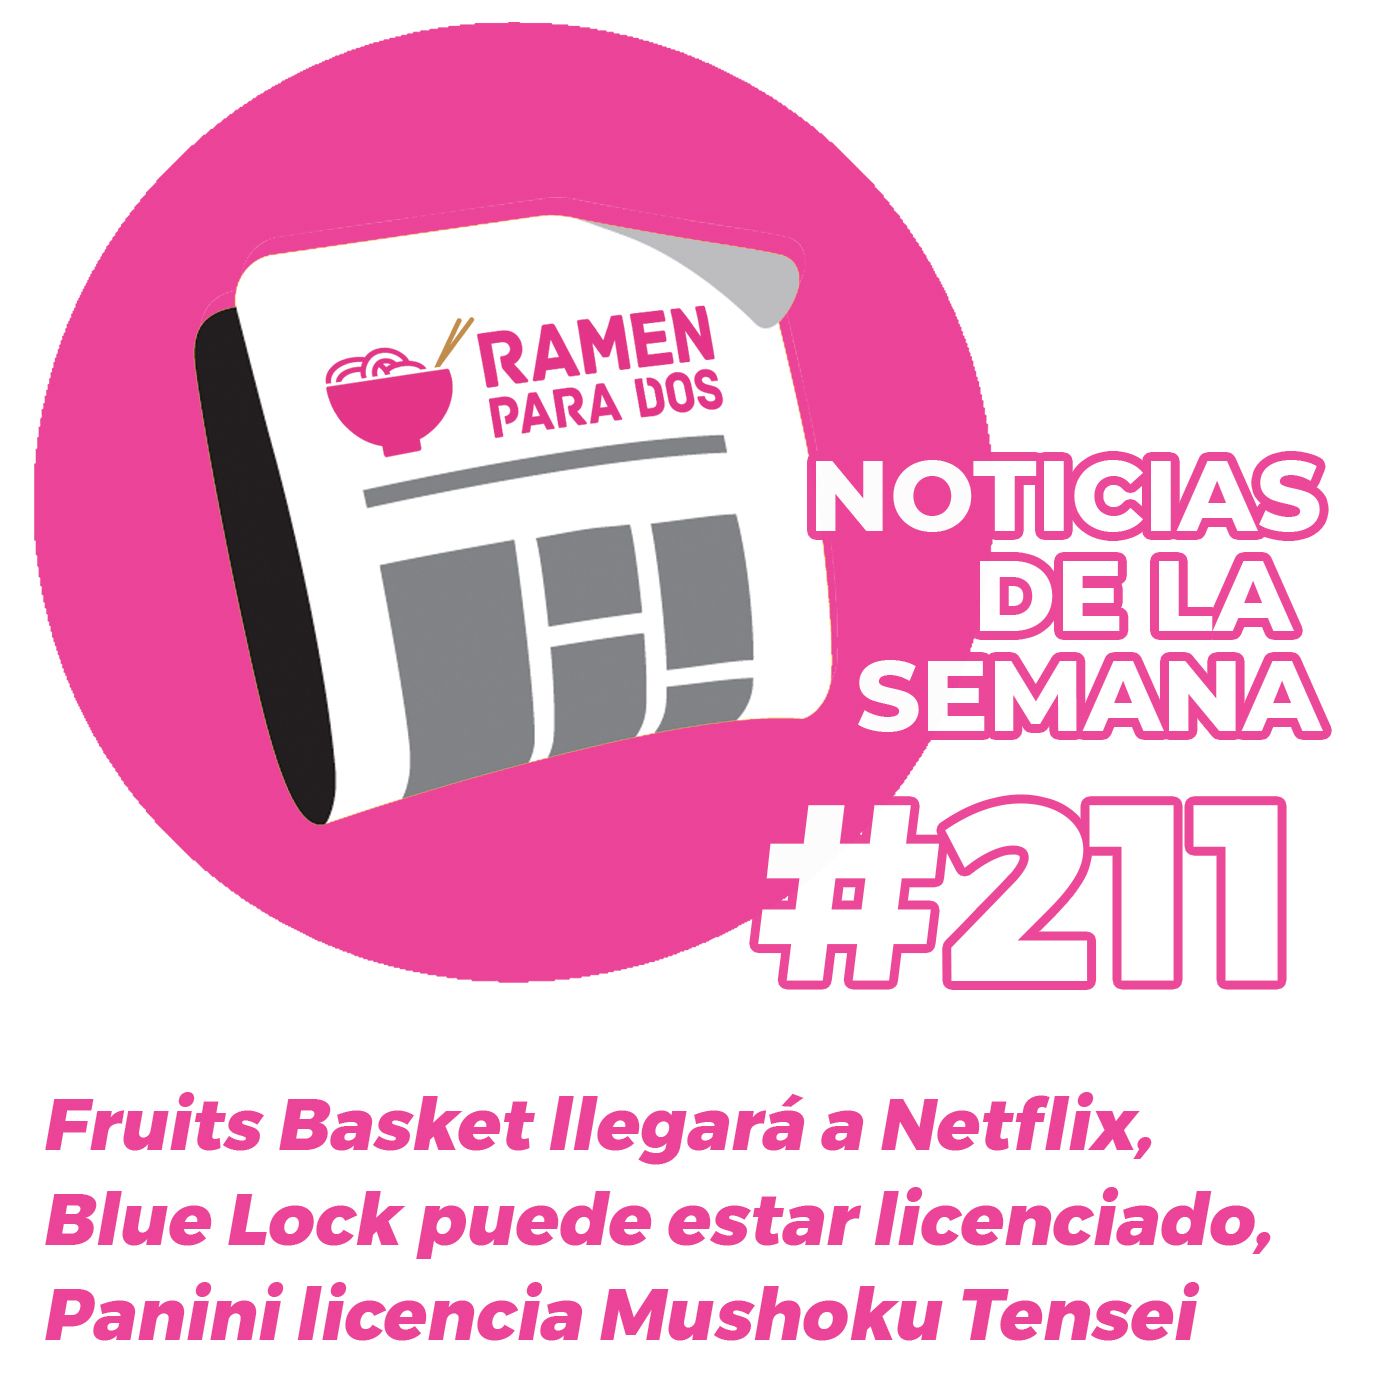 211. Fruits Basket llegará a Netflix, Blue Lock estaría licenciado.